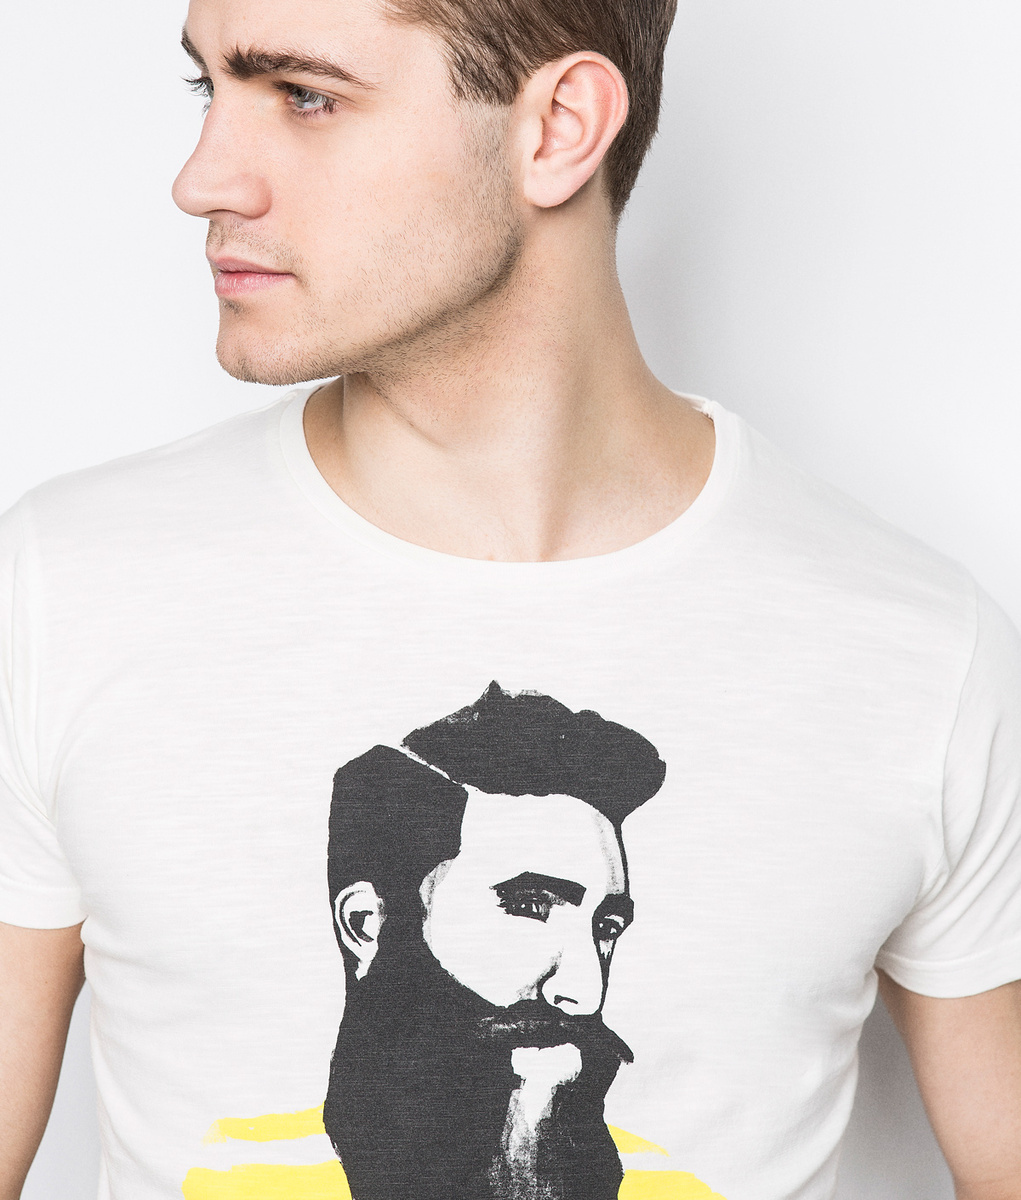 Springfield szakállas férfit ábrázoló póló 2015 fotója